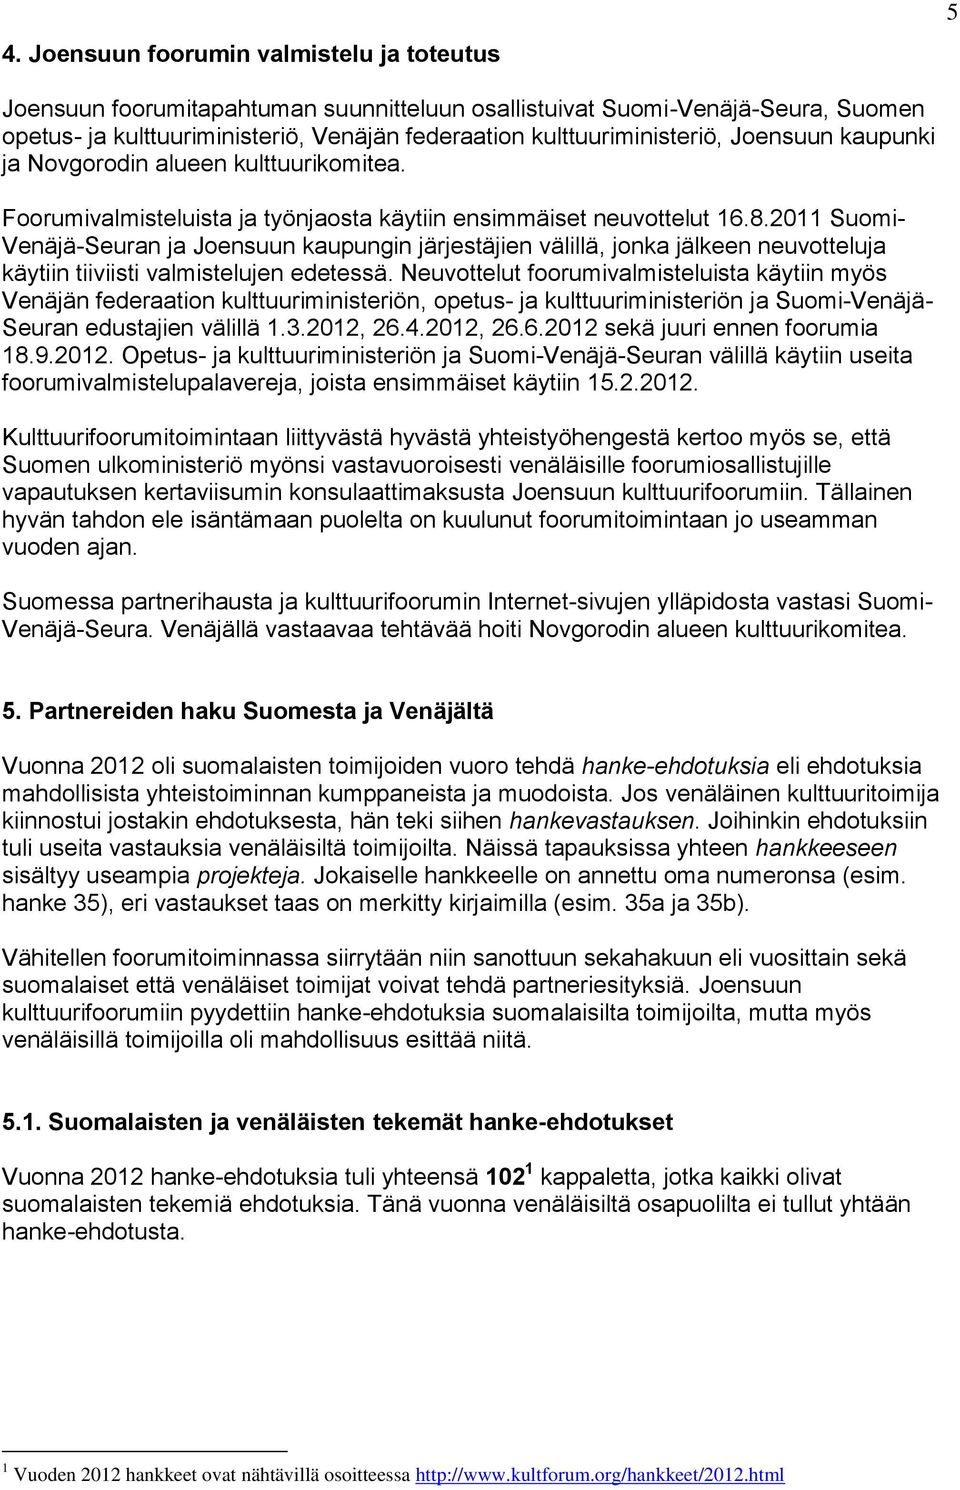 2011 Suomi- Venäjä-Seuran ja Joensuun kaupungin järjestäjien välillä, jonka jälkeen neuvotteluja käytiin tiiviisti valmistelujen edetessä.